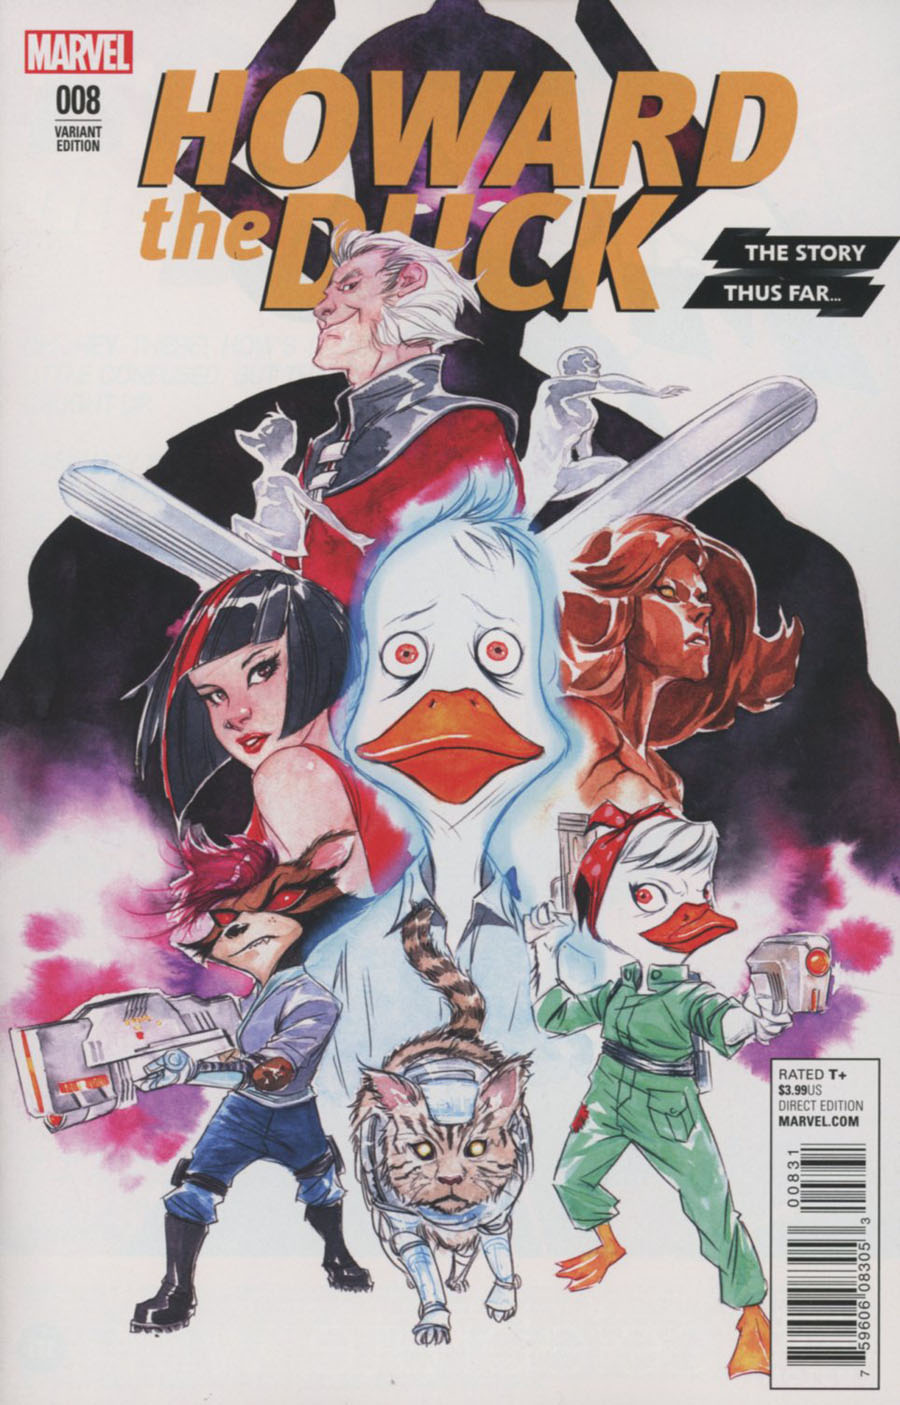 Howard The Duck Vol 5 #8 Cover B Variant Dustin Weaver Story Thus Far Cover